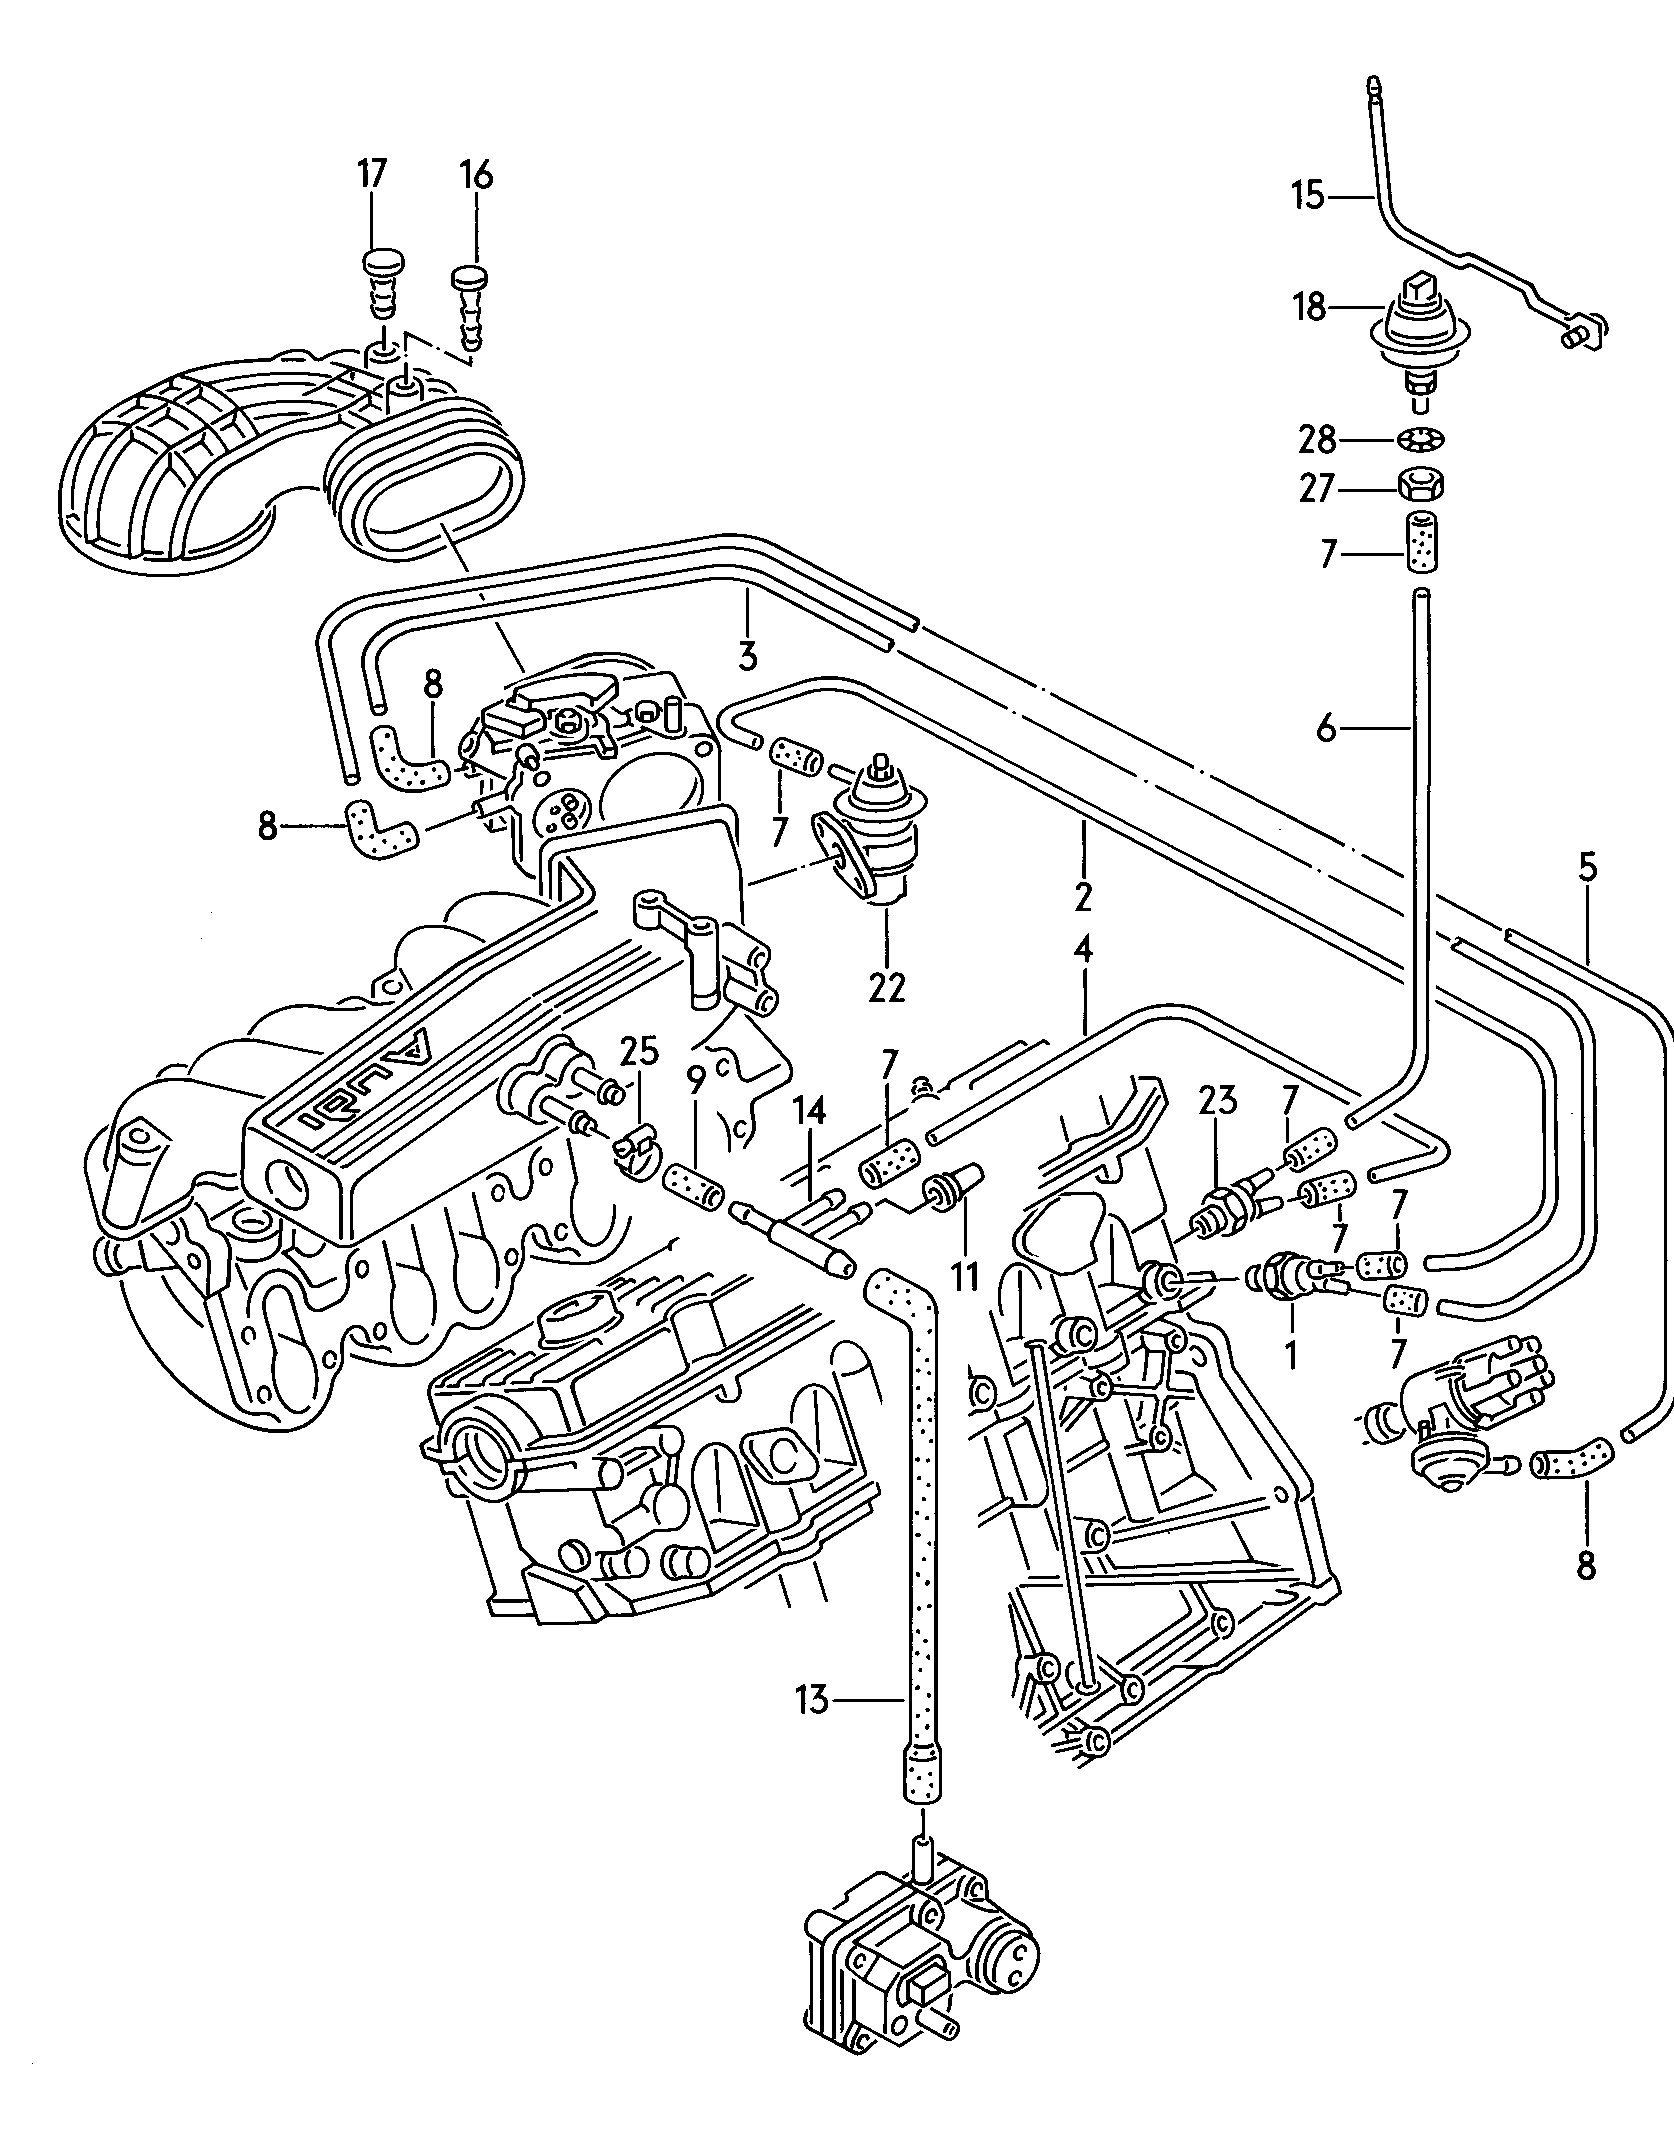 systeme de depressionpour vehicules sans<br>catalyseur 2,0l - Audi 80/90/Avant - a80